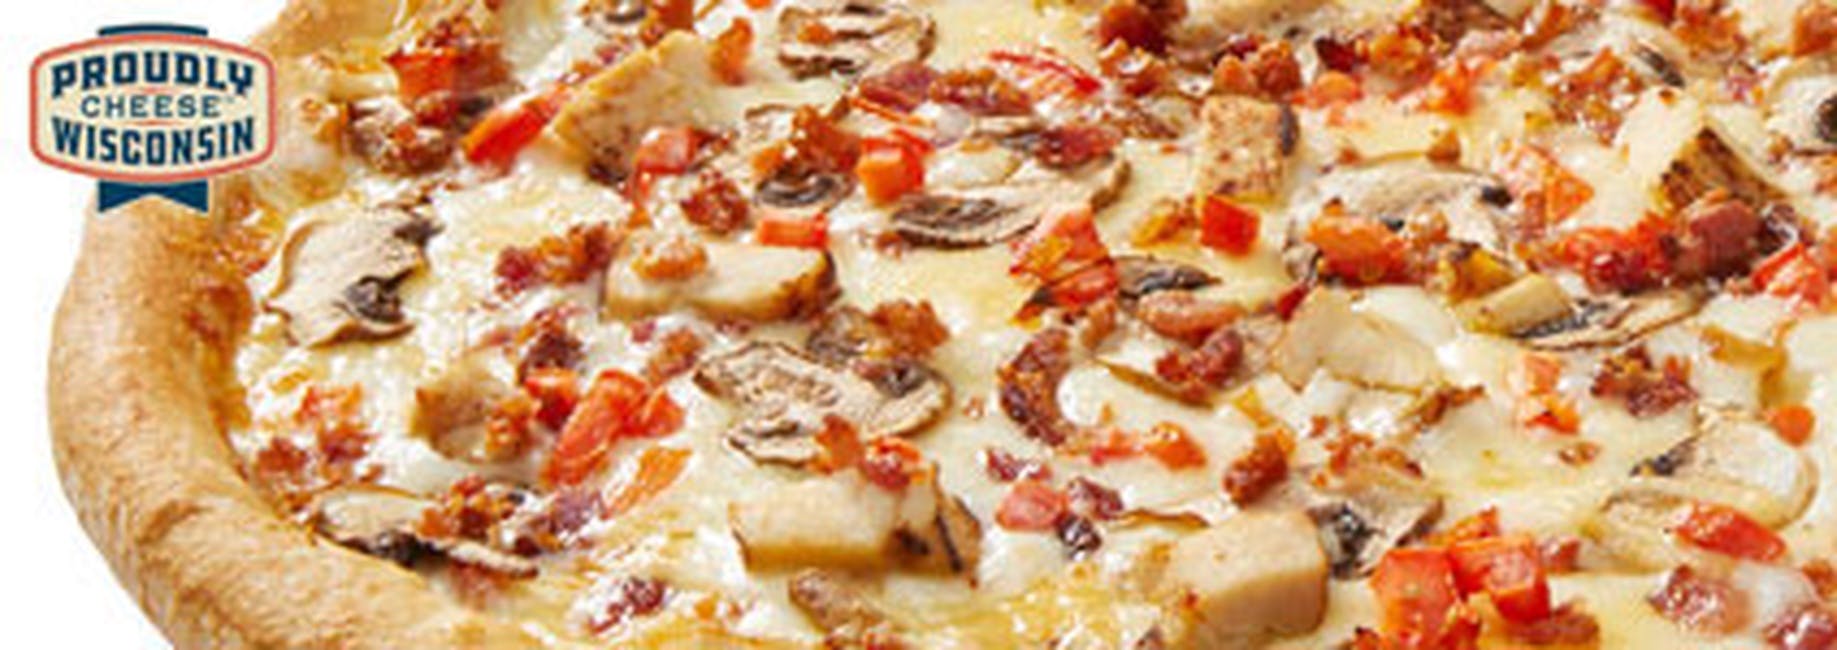 Chicken Alfredo Cheesemaker Pizza from Toppers Pizza - La Crosse in La Crosse, WI